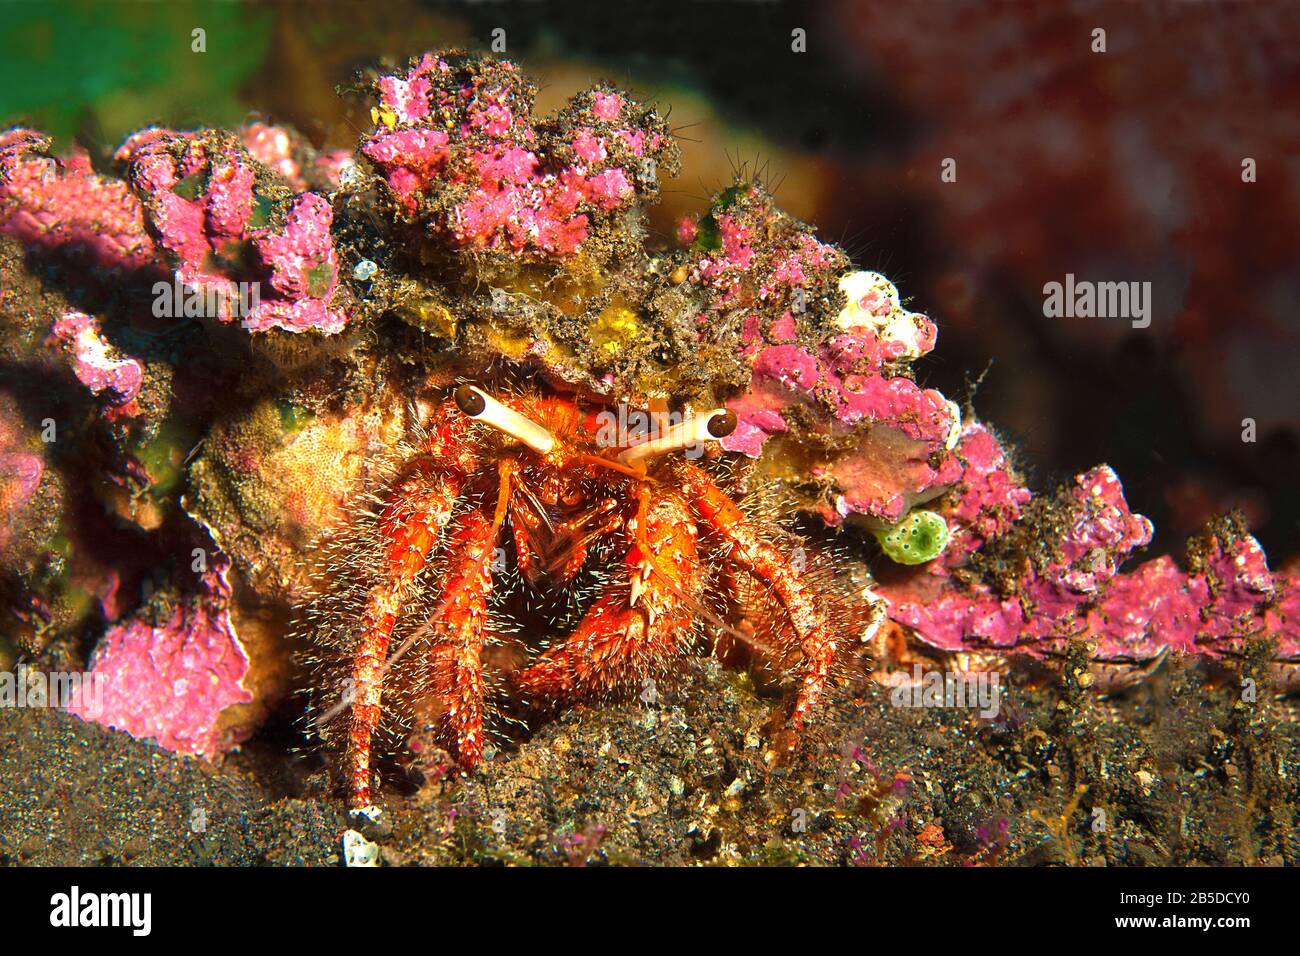 Camouflage per sopravvivere. Primo piano di granchio che porta un anemone sulla schiena per proteggersi dai nemici. Scoperto durante un tuffo a Bali, Indonesia Foto Stock